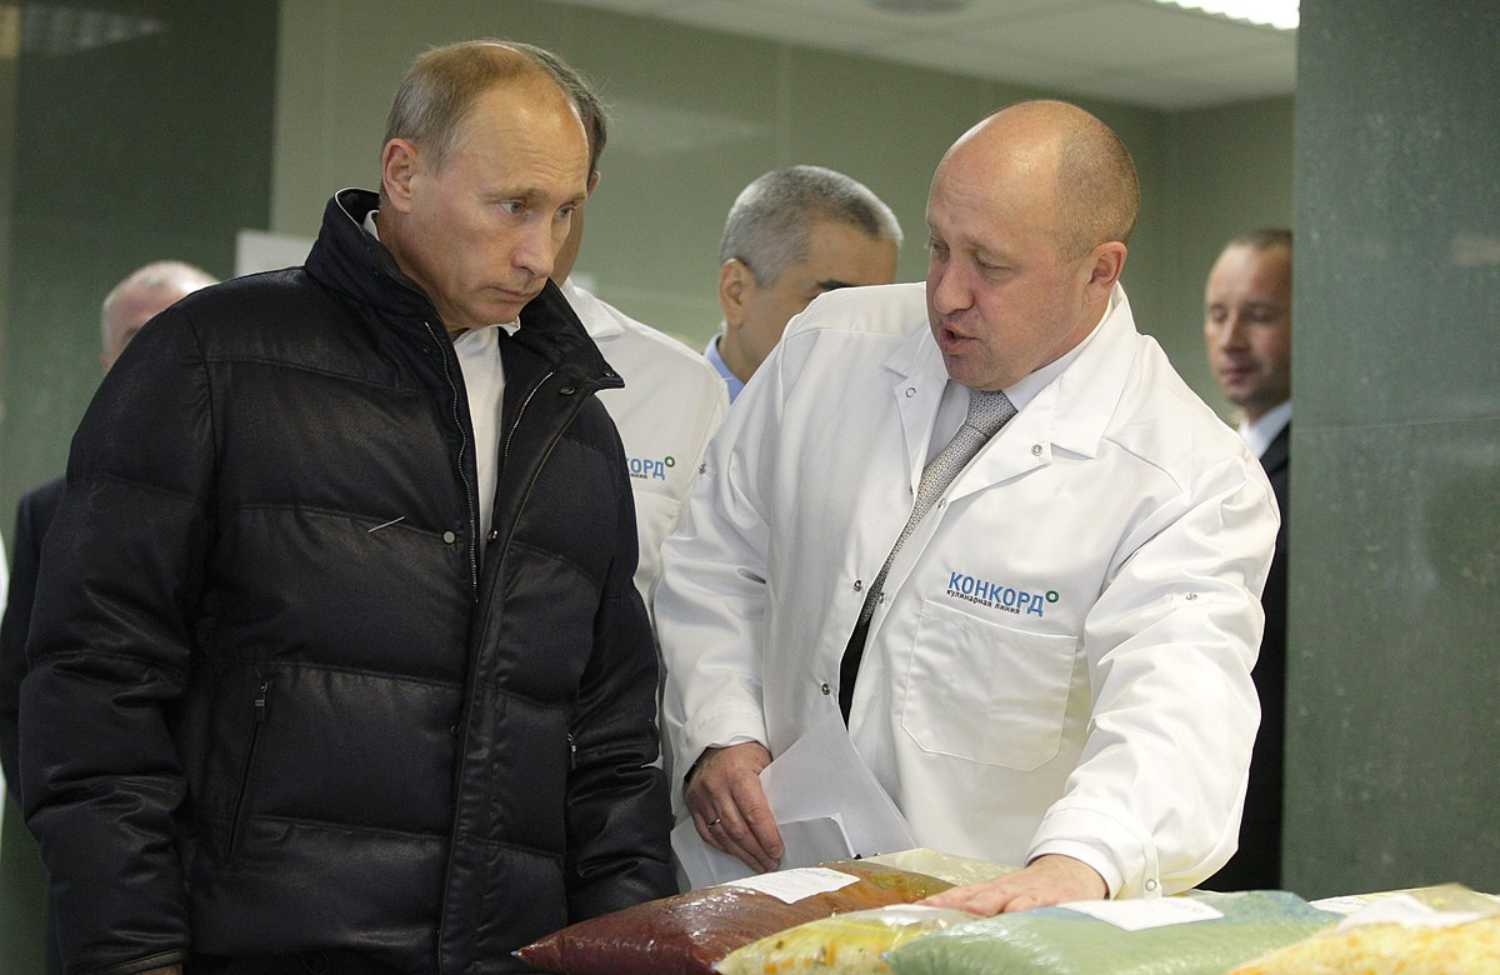 Władimir Putin i Jewgienij Prigożyn - jeszcze jako sojusznicy.